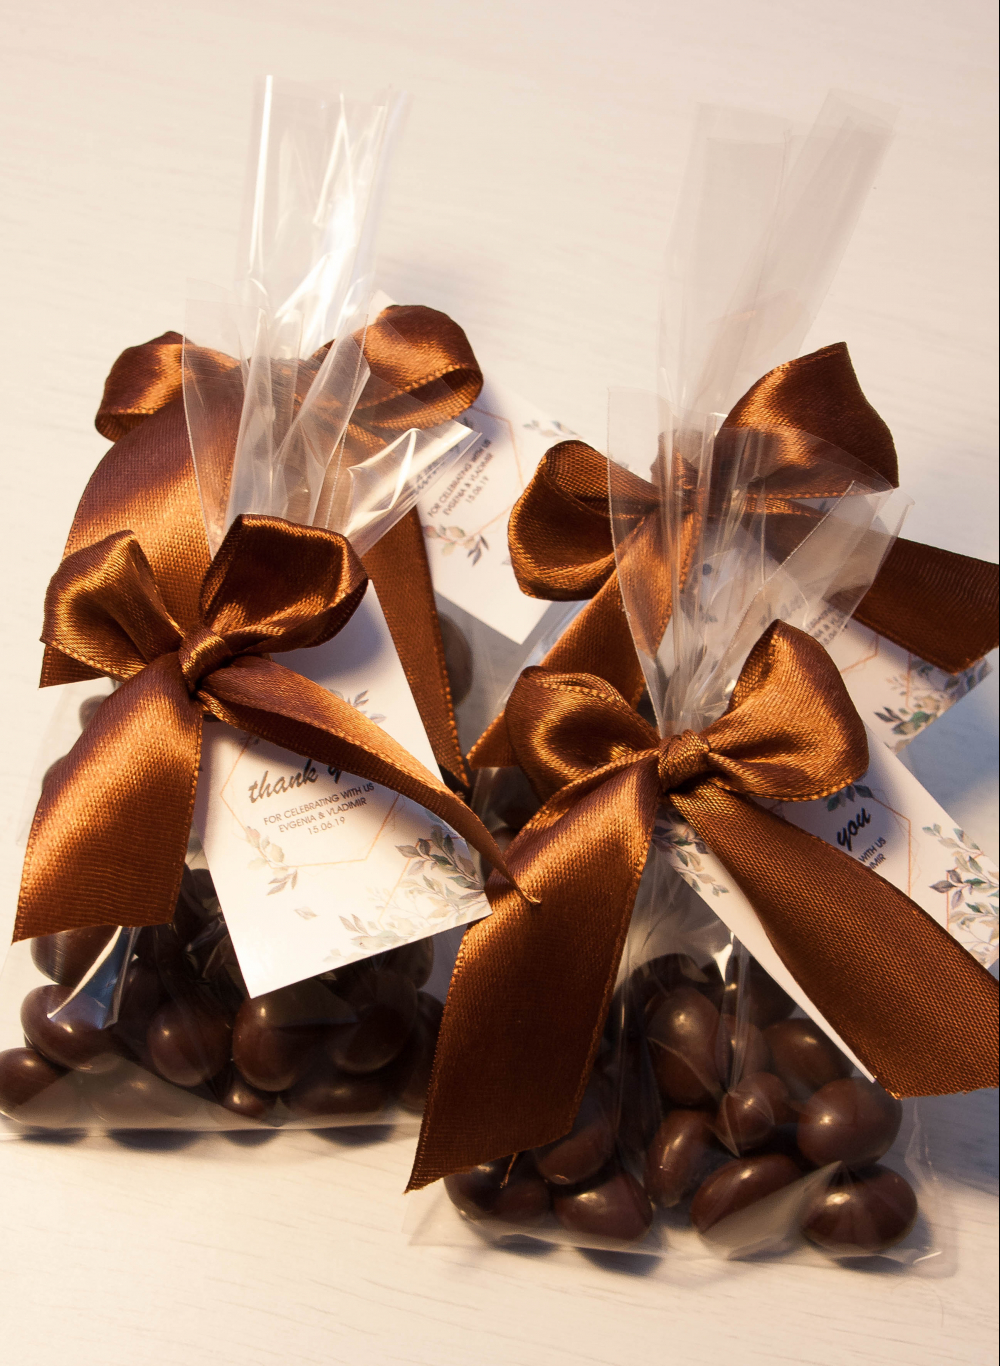 Бонбоньерки на свадьбу с орехами в шоколаде

Размер: 15х8 см
Стоимость - 70 руб./шт.